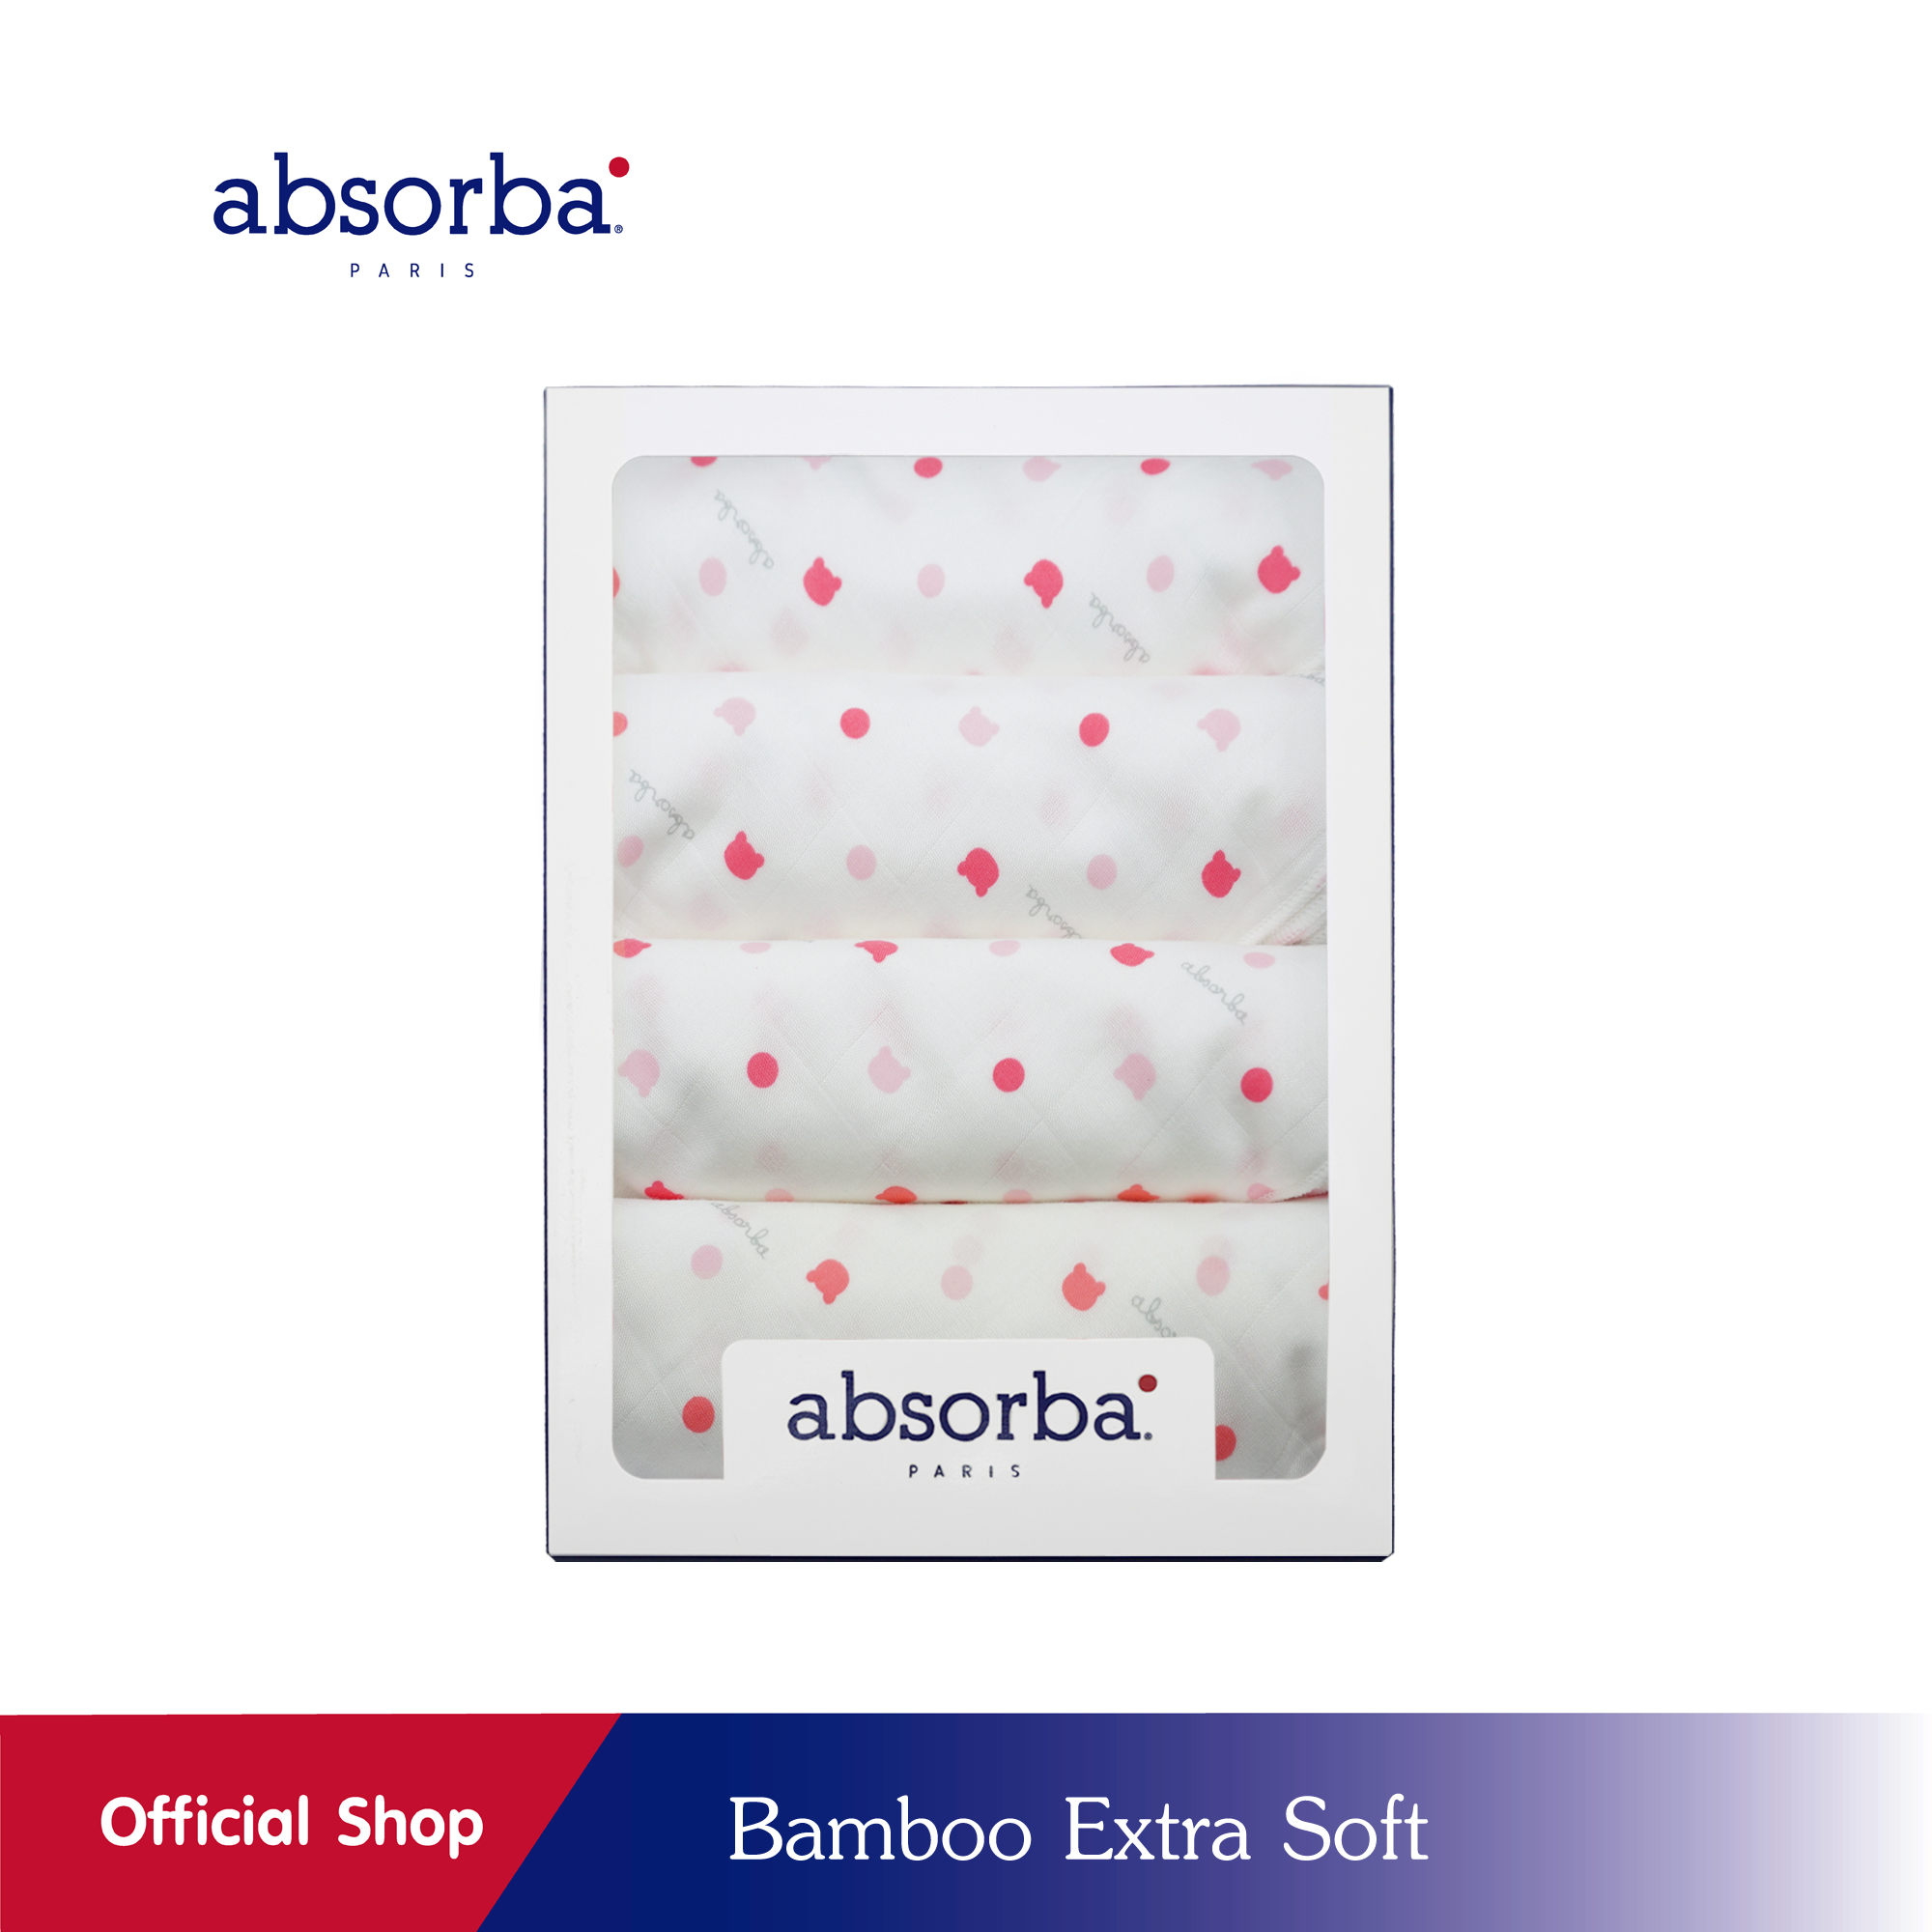 โปรโมชั่น absorba (แอ๊บซอร์บา) ผ้าอ้อมผ้าเยื่อไผ่ Bamboo Extra Soft สีชมพู นุ่ม ลื่น สัมผัสเย็น ยับยั้งแบคทีเรีย ไม่มีกลิ่นอับ ขนาด 30x30 นิ้ว (แพ็ค 4 ผืน) - R6G140PI00